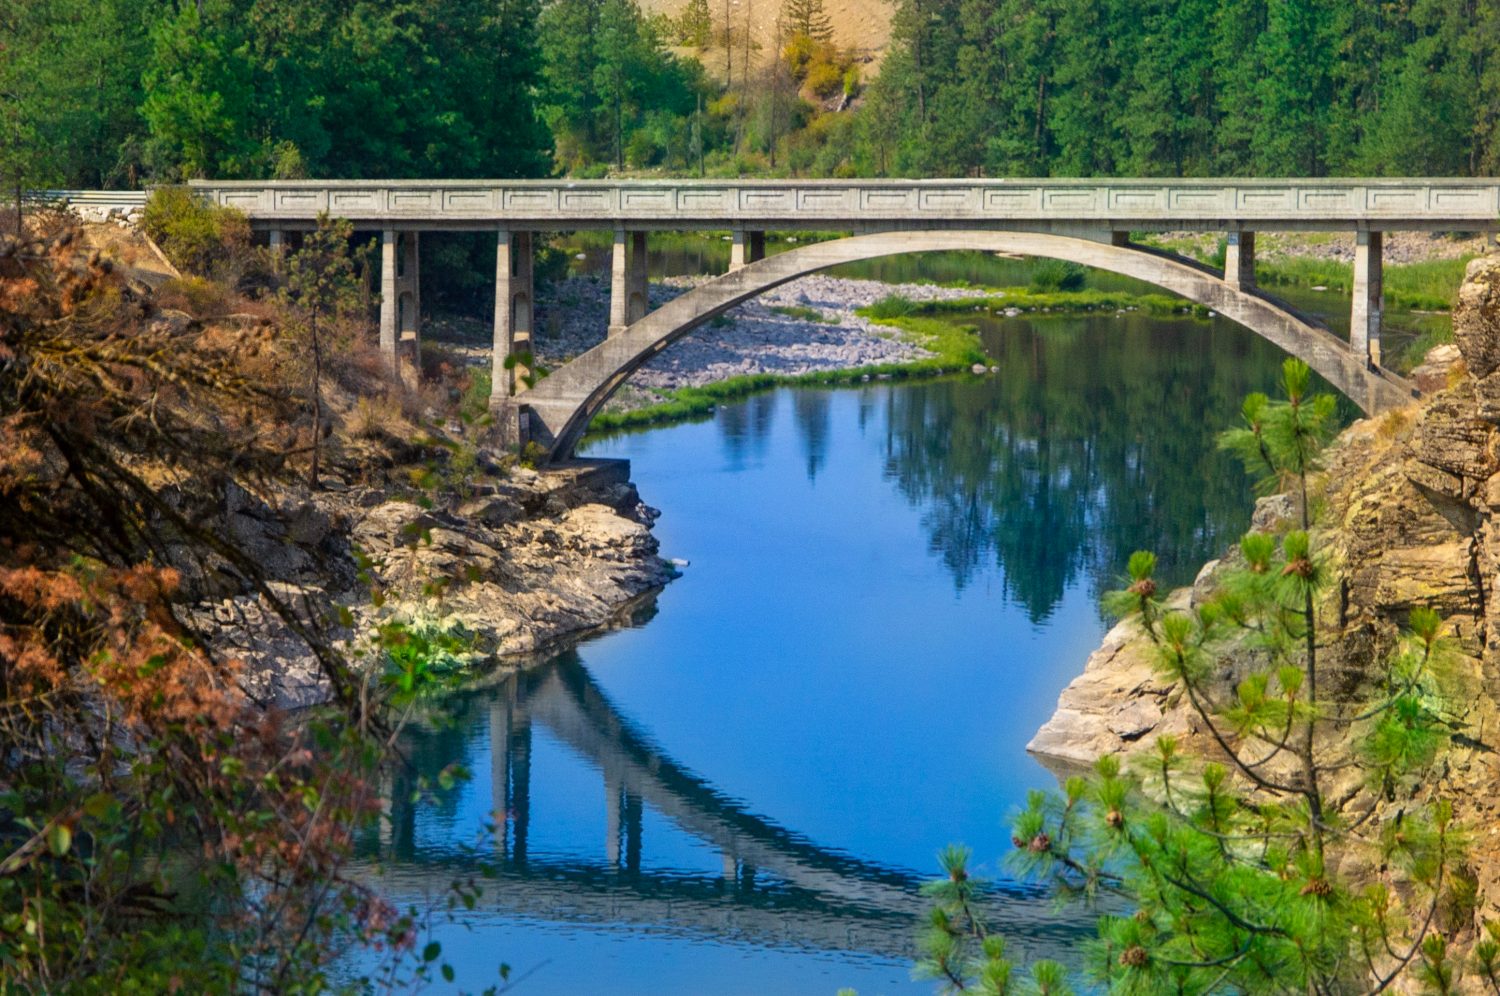 Post Falls, ID: 6 agosto 2018;  Il ponte ad arco in cemento attraversa il fiume Spokane con il cielo azzurro e l'architettura che si riflette sull'acqua in esposizione temporale con alberi sempreverdi sullo sfondo.